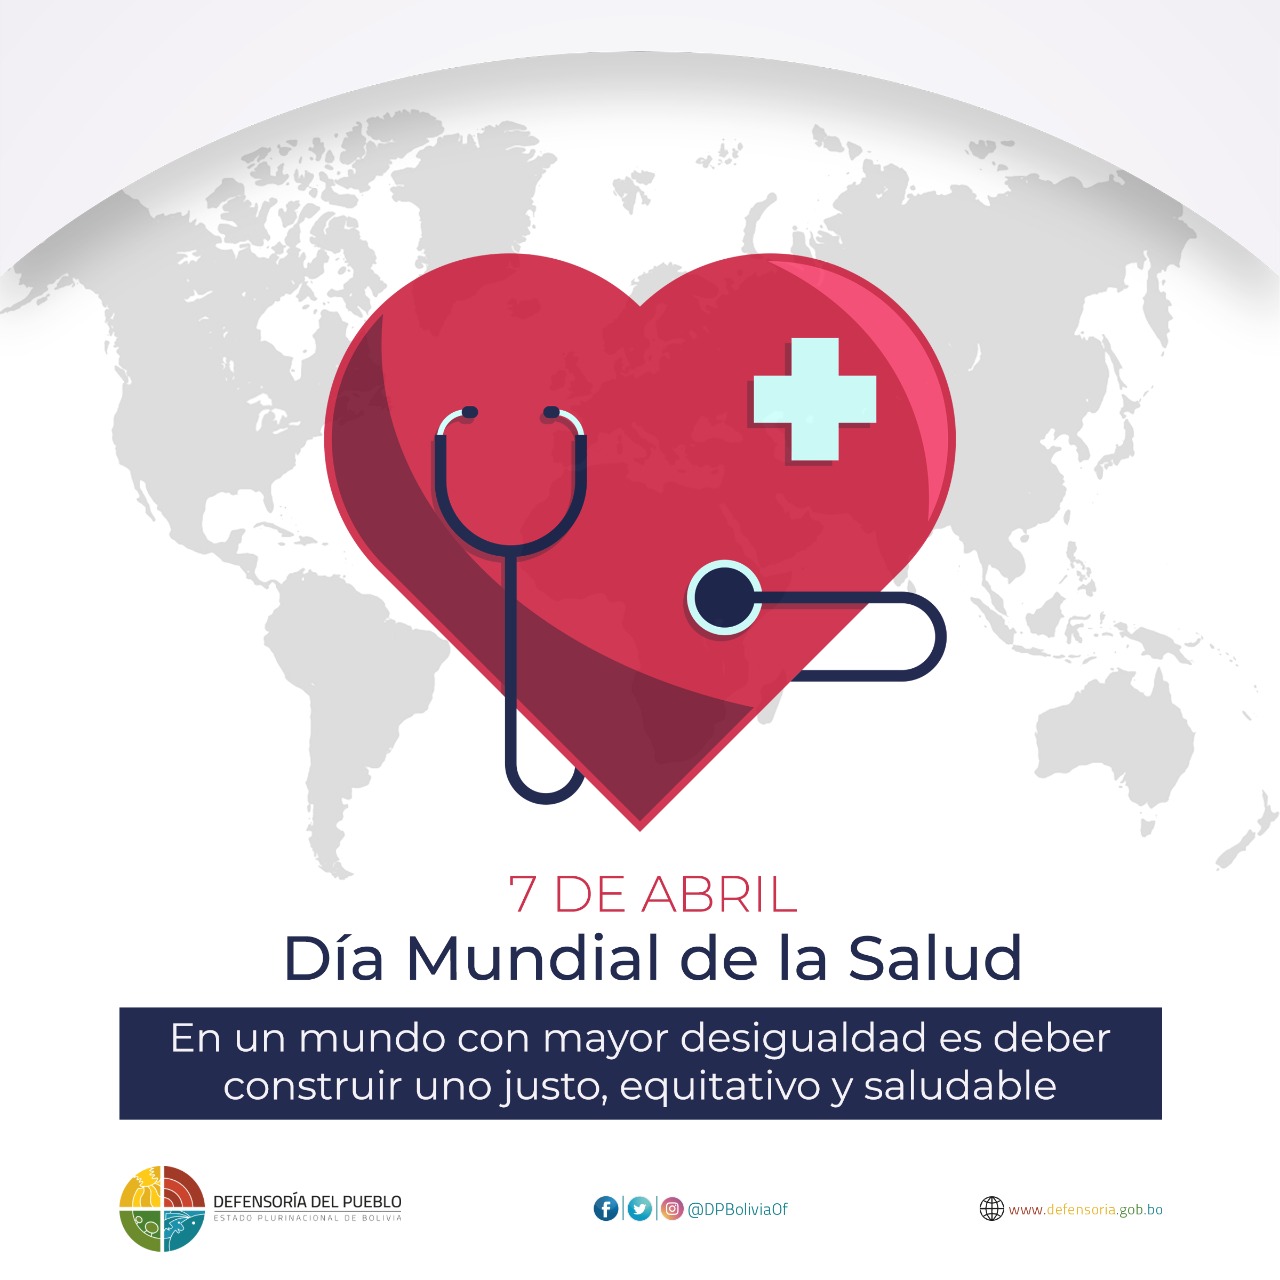 Al conmemorar el Día Mundial de la Salud, la Defensoría del Pueblo exhorta al Estado a  reforzar las medidas contra la COVID-19